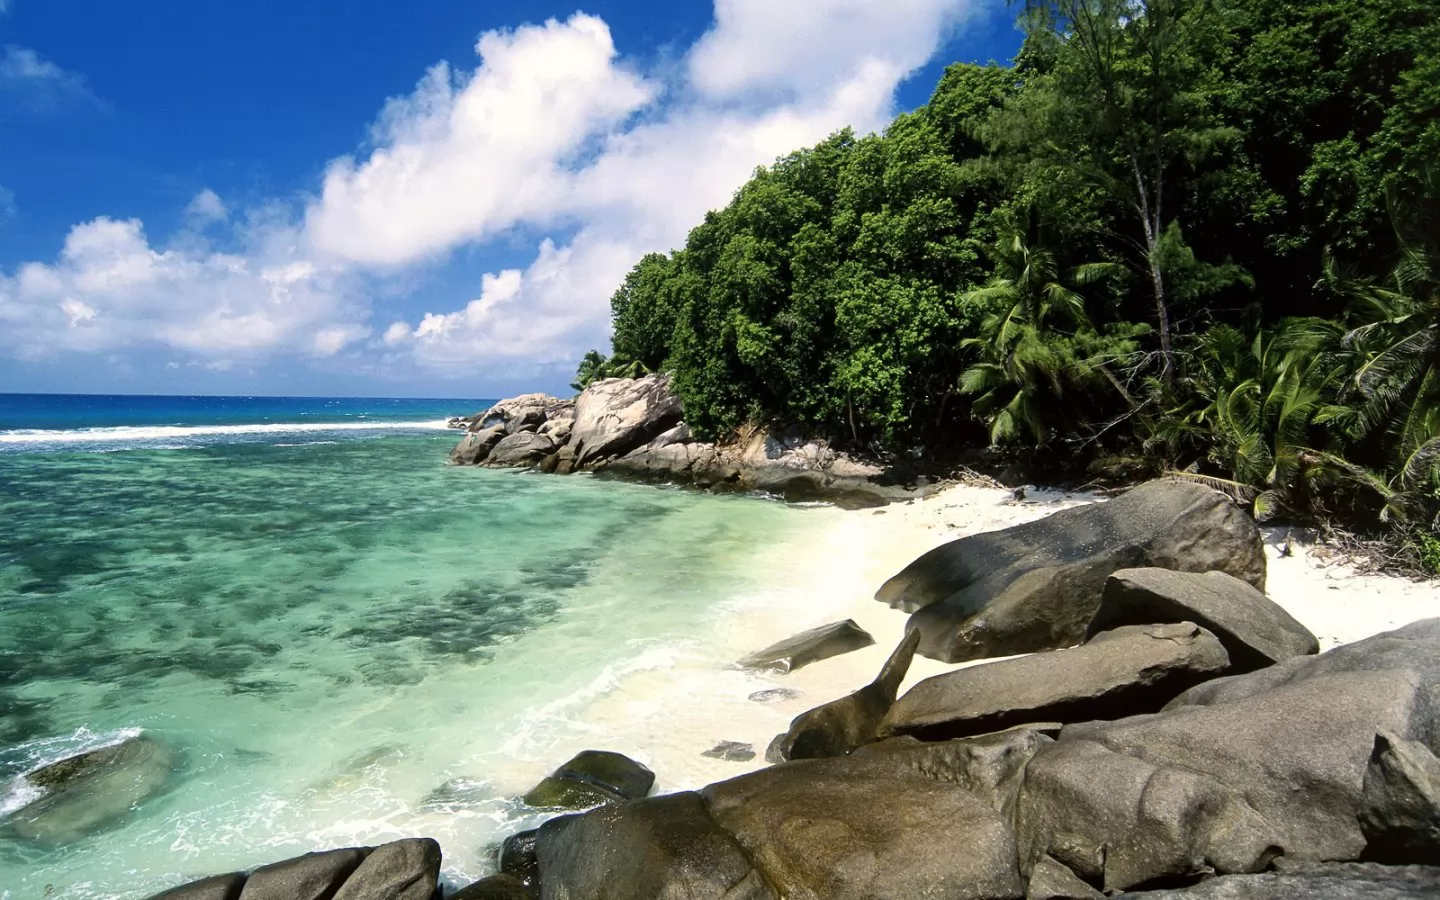 Сейшельские острова. Pirate Cove, Moyenne Island, море, остров, природа, тропики х